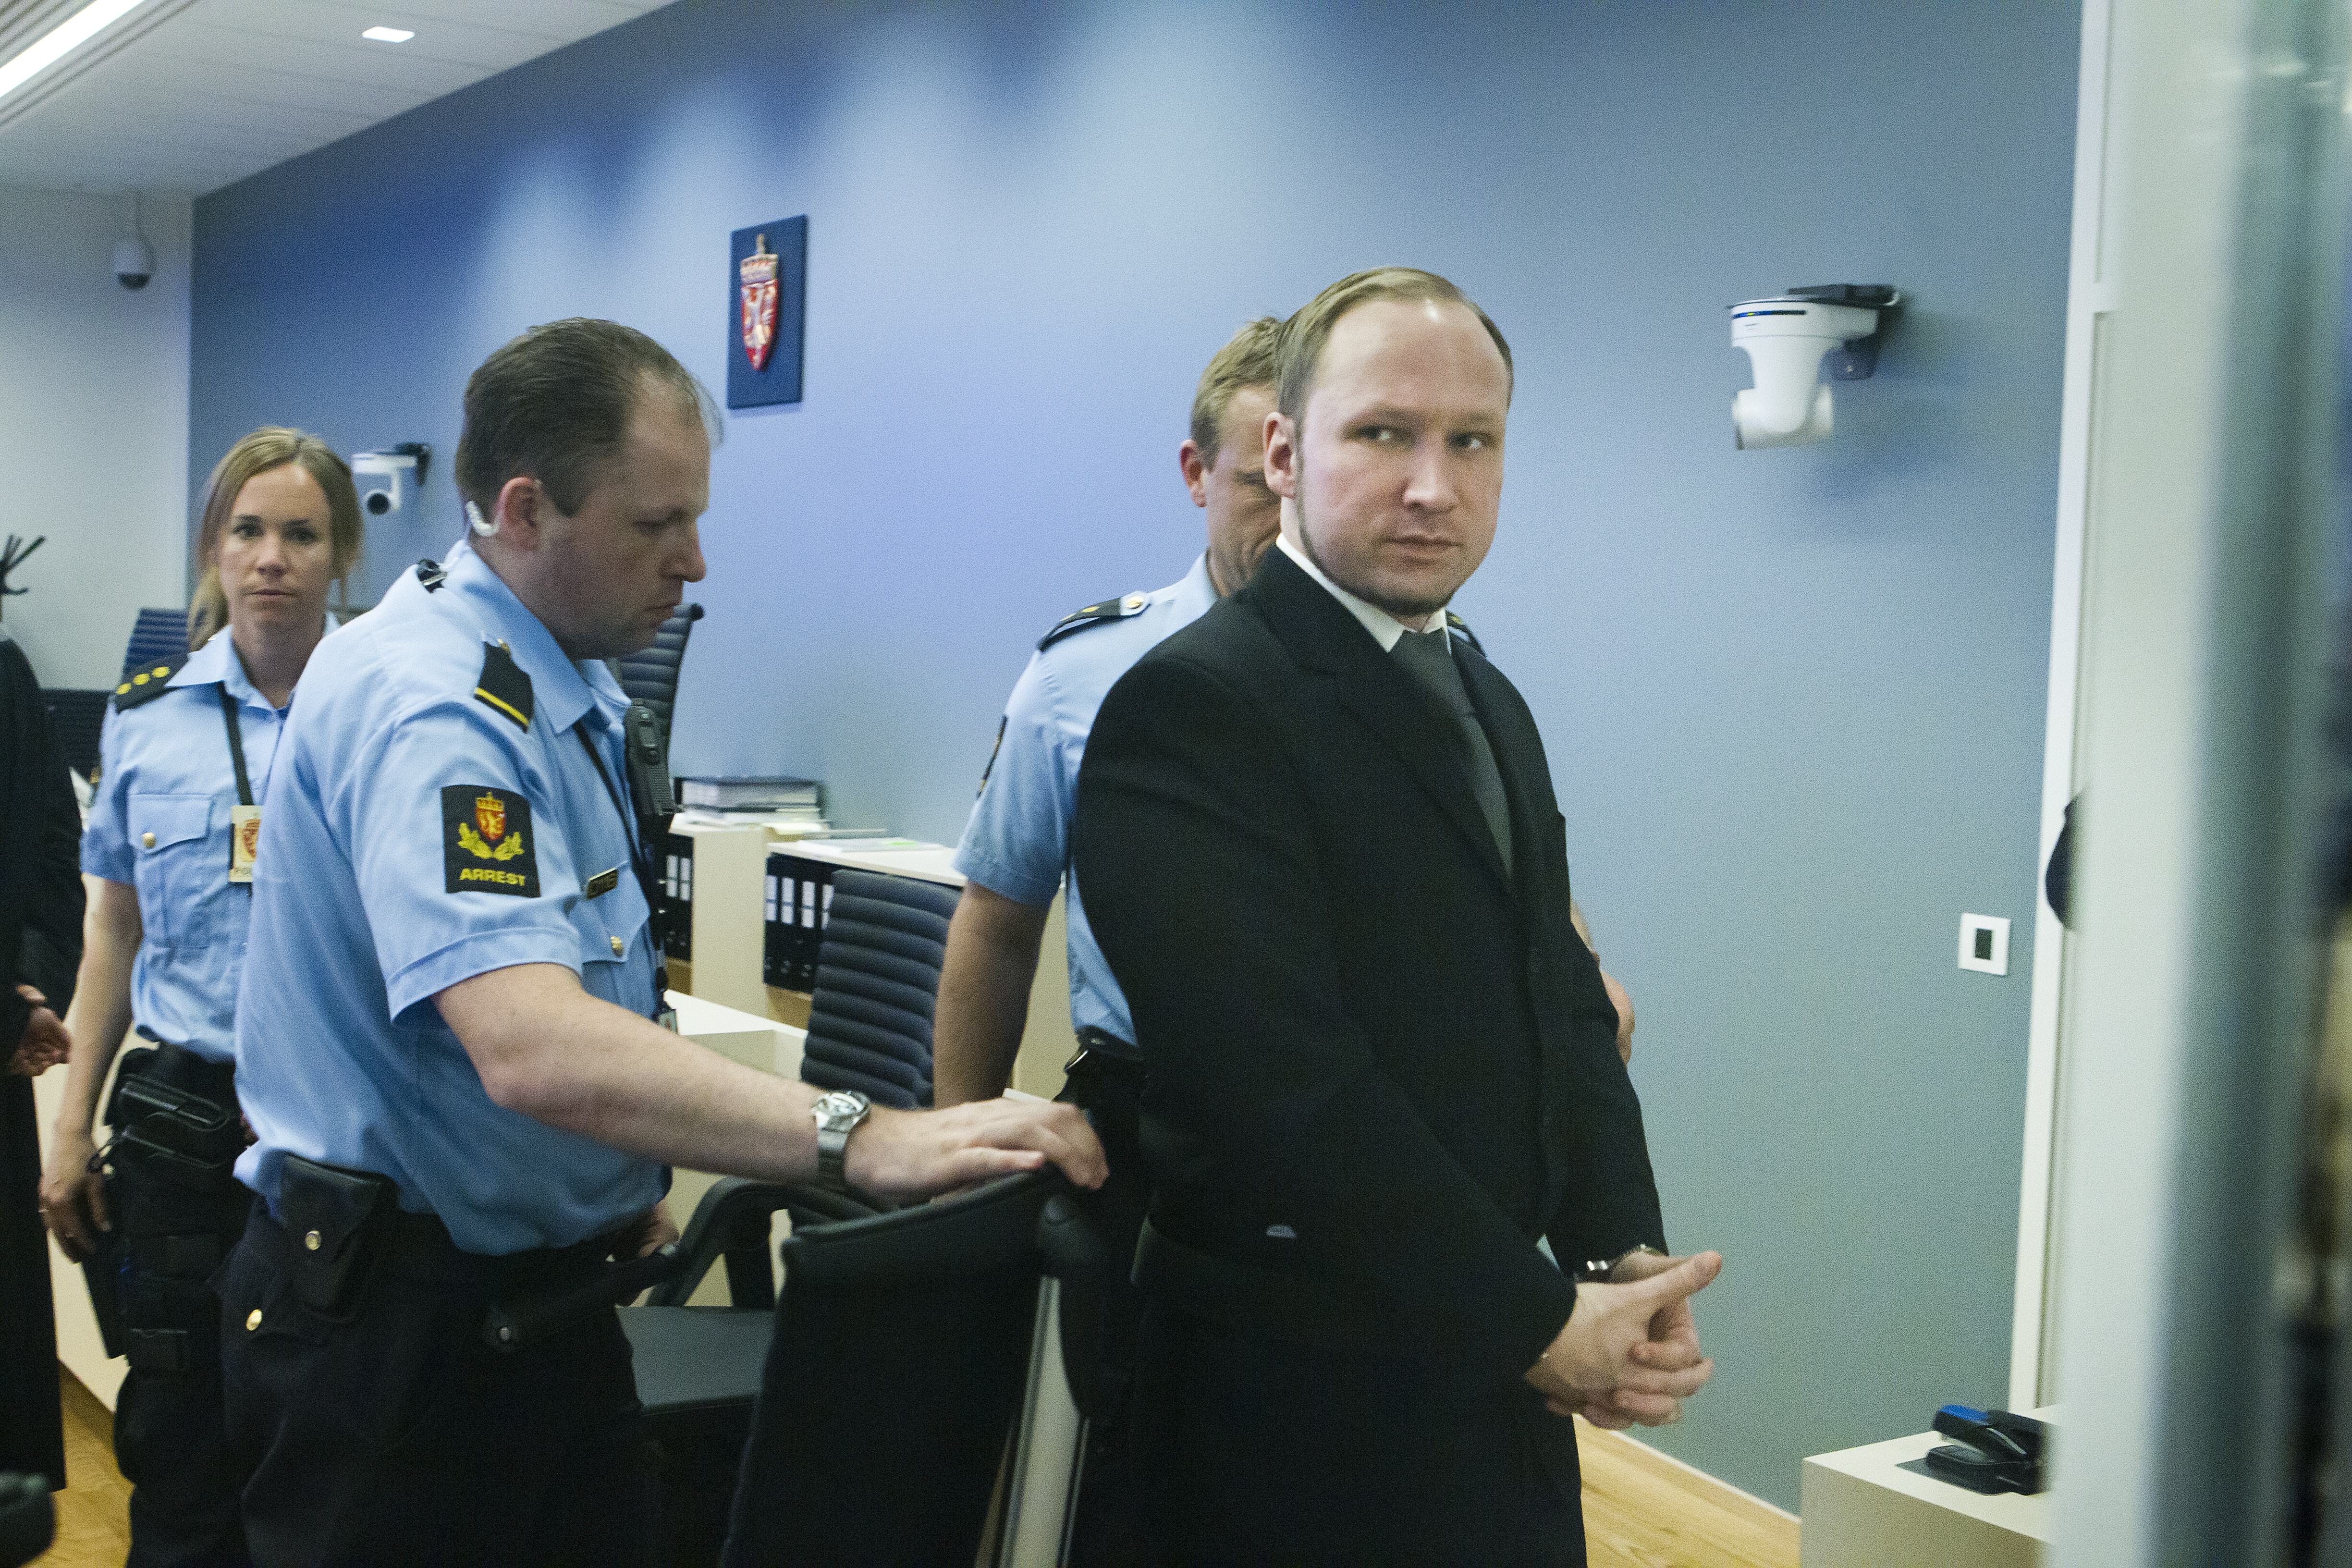 Offer, Rättegång, Massmördare, Anders Behring Breivik, Oslo, Massaker, Utøya, terrorist, Vittnen